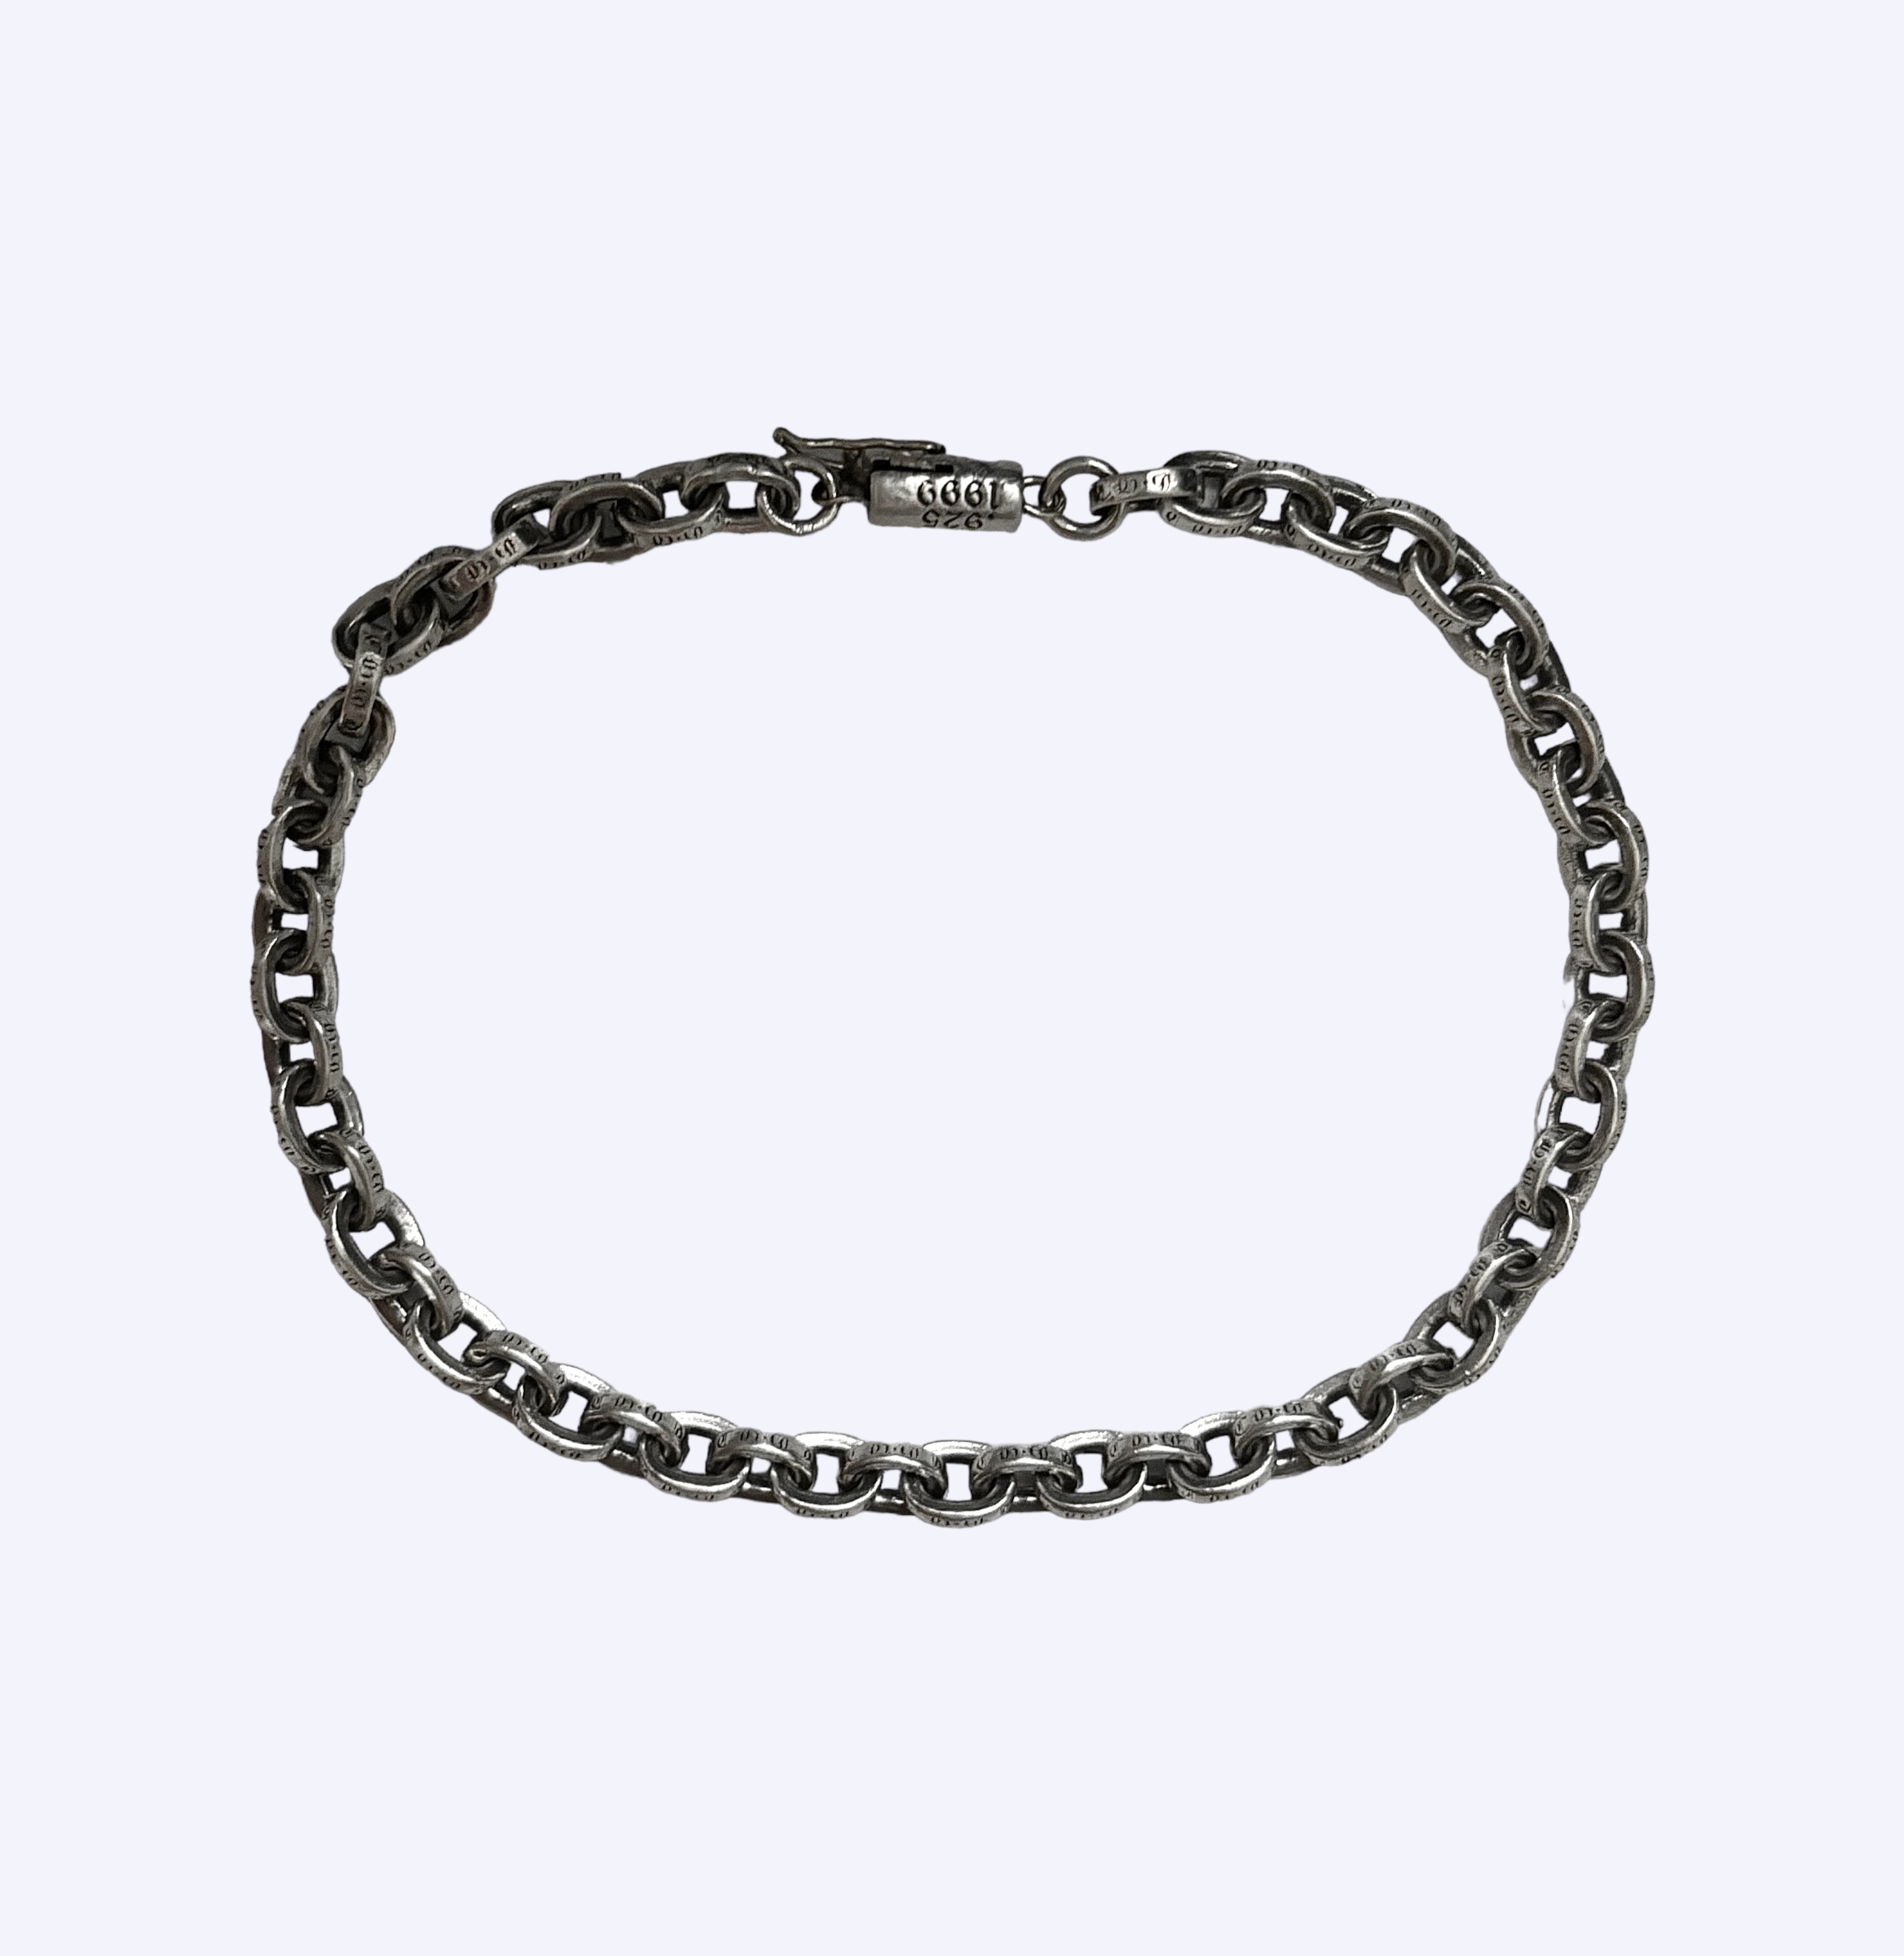 Chrome Hearts XL size 8.25" Paper chain bracelet